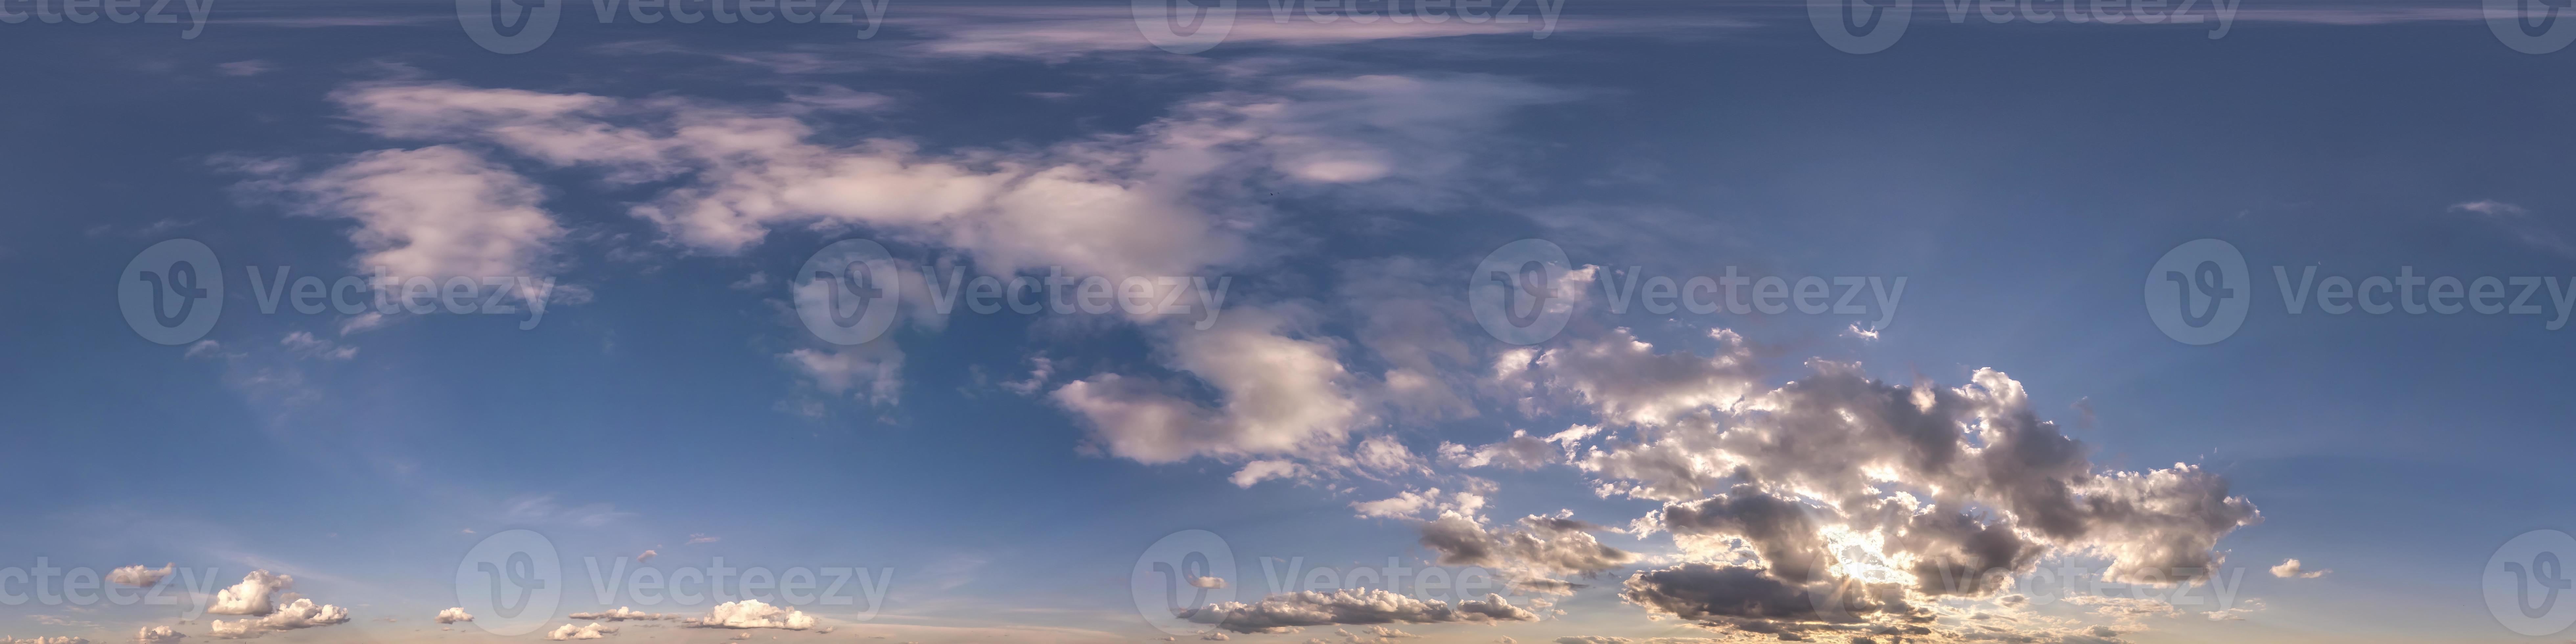 céu azul à noite hdr 360 panorama com lindas nuvens brancas em projeção  perfeita com zênite para uso em gráficos 3d ou desenvolvimento de jogos  como cúpula do céu ou editar tiro